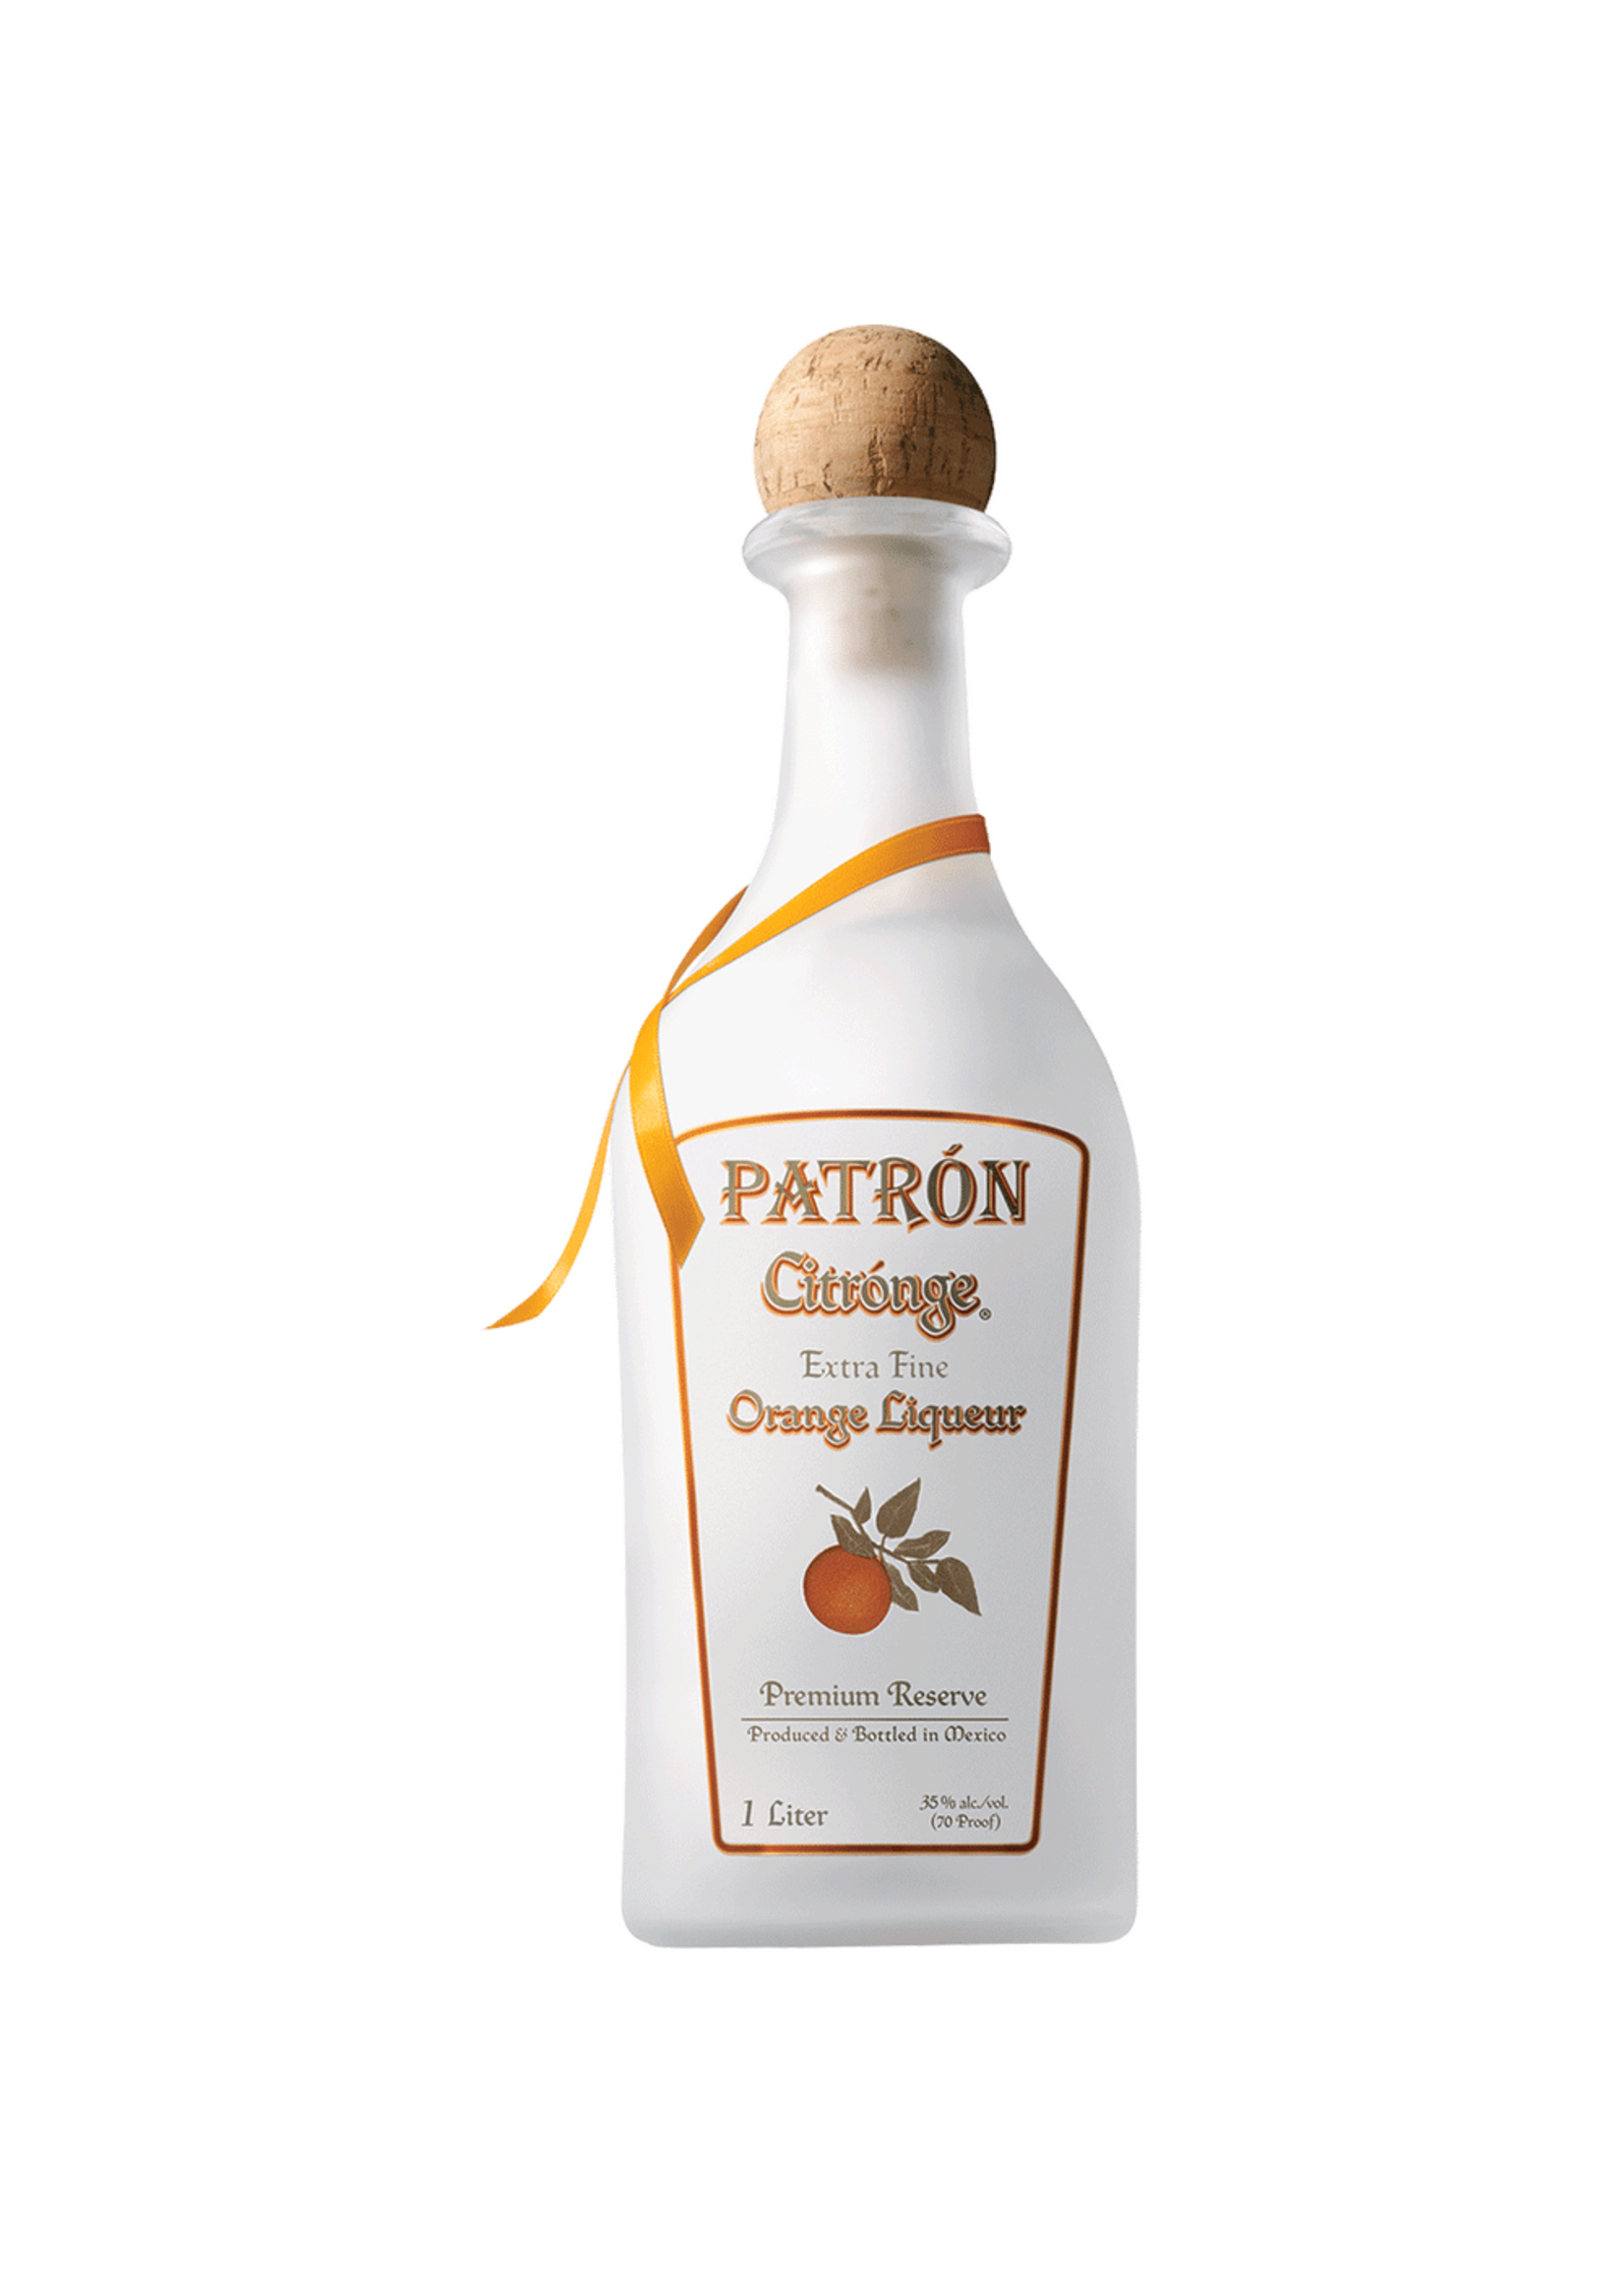 Patron Patron Citronge Orange Liqueur 70Proof 1 Ltr